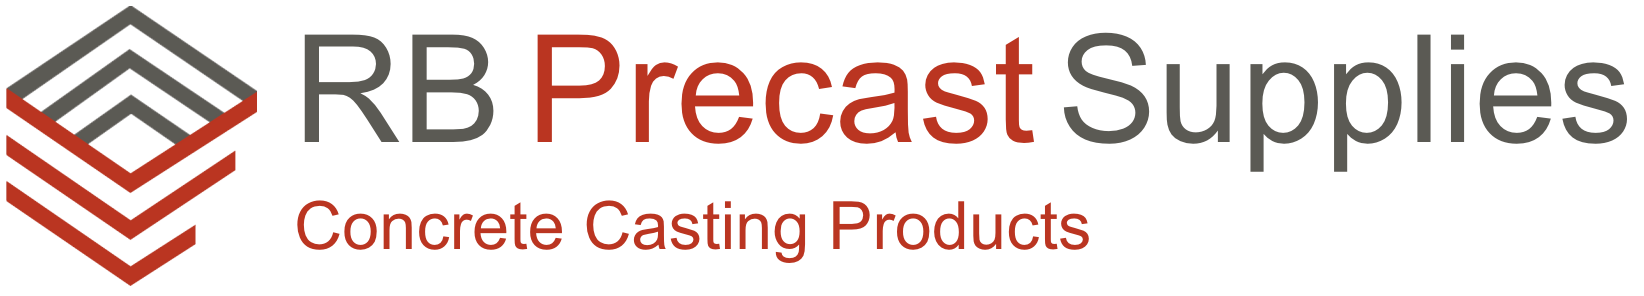 Precast Concrete Product Suppliers